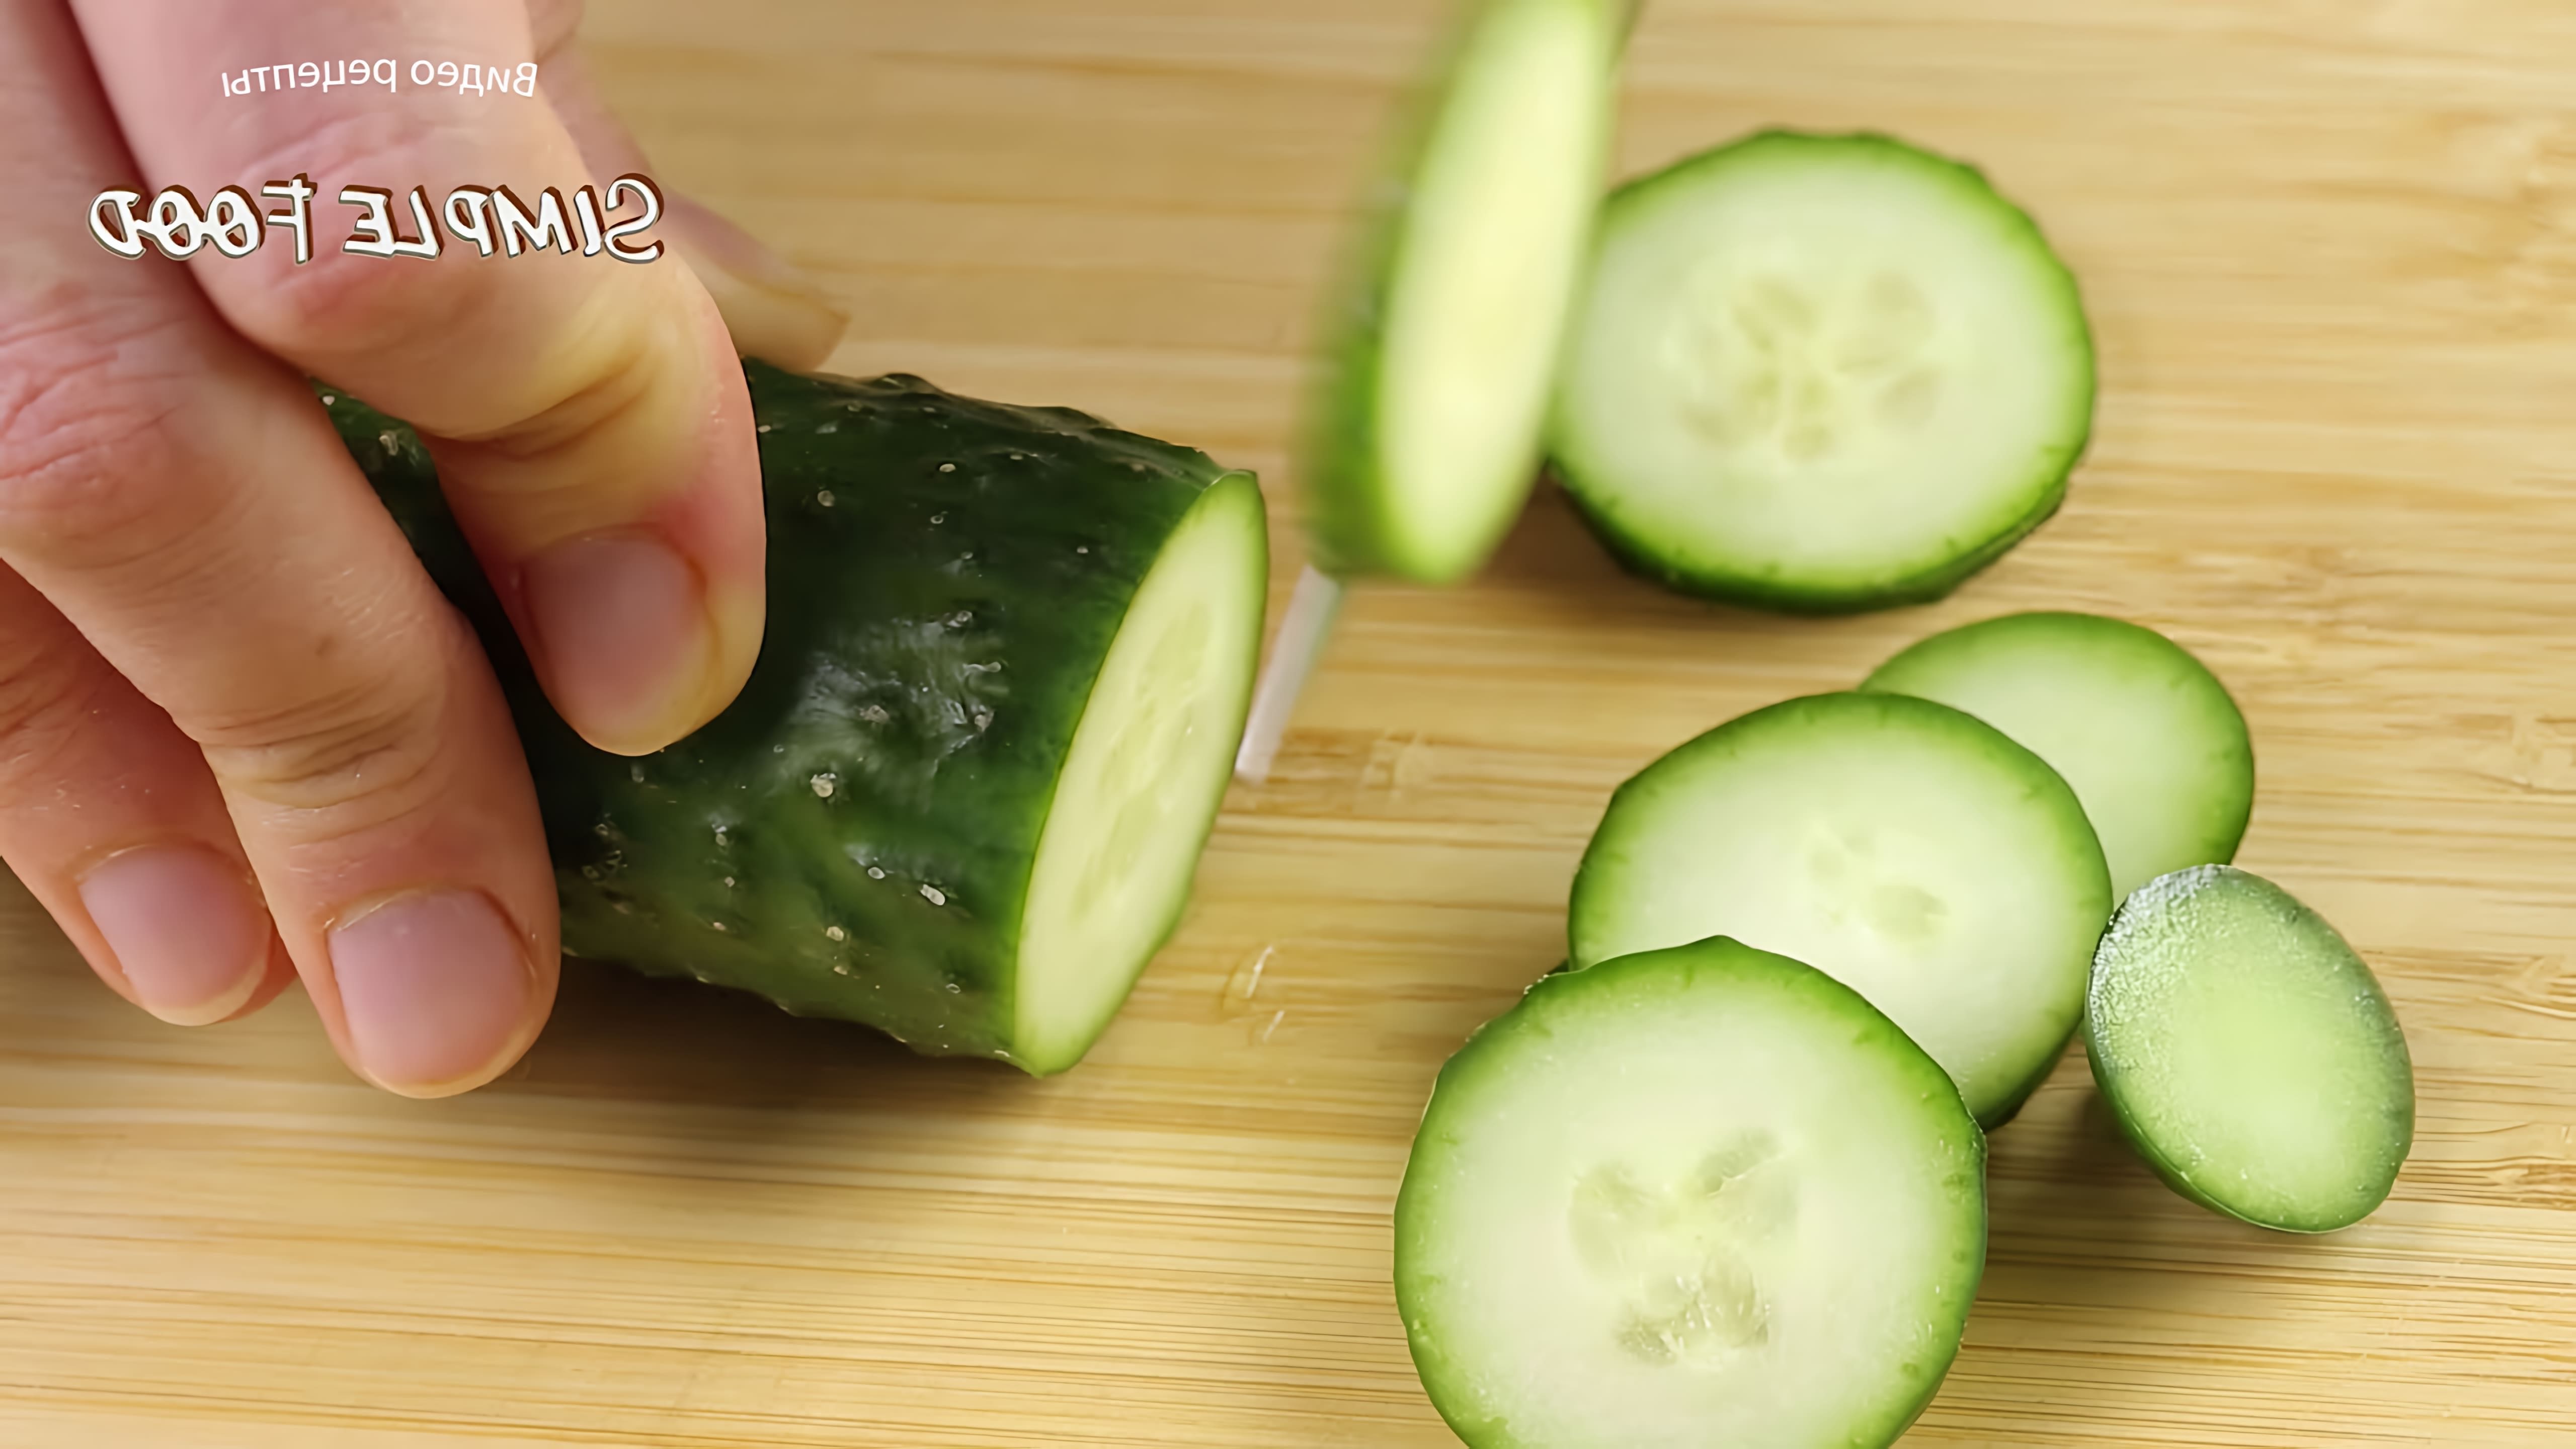 Видео рецепт быстрого и легкого салата, который можно приготовить за 10 минут, используя простые ингредиенты